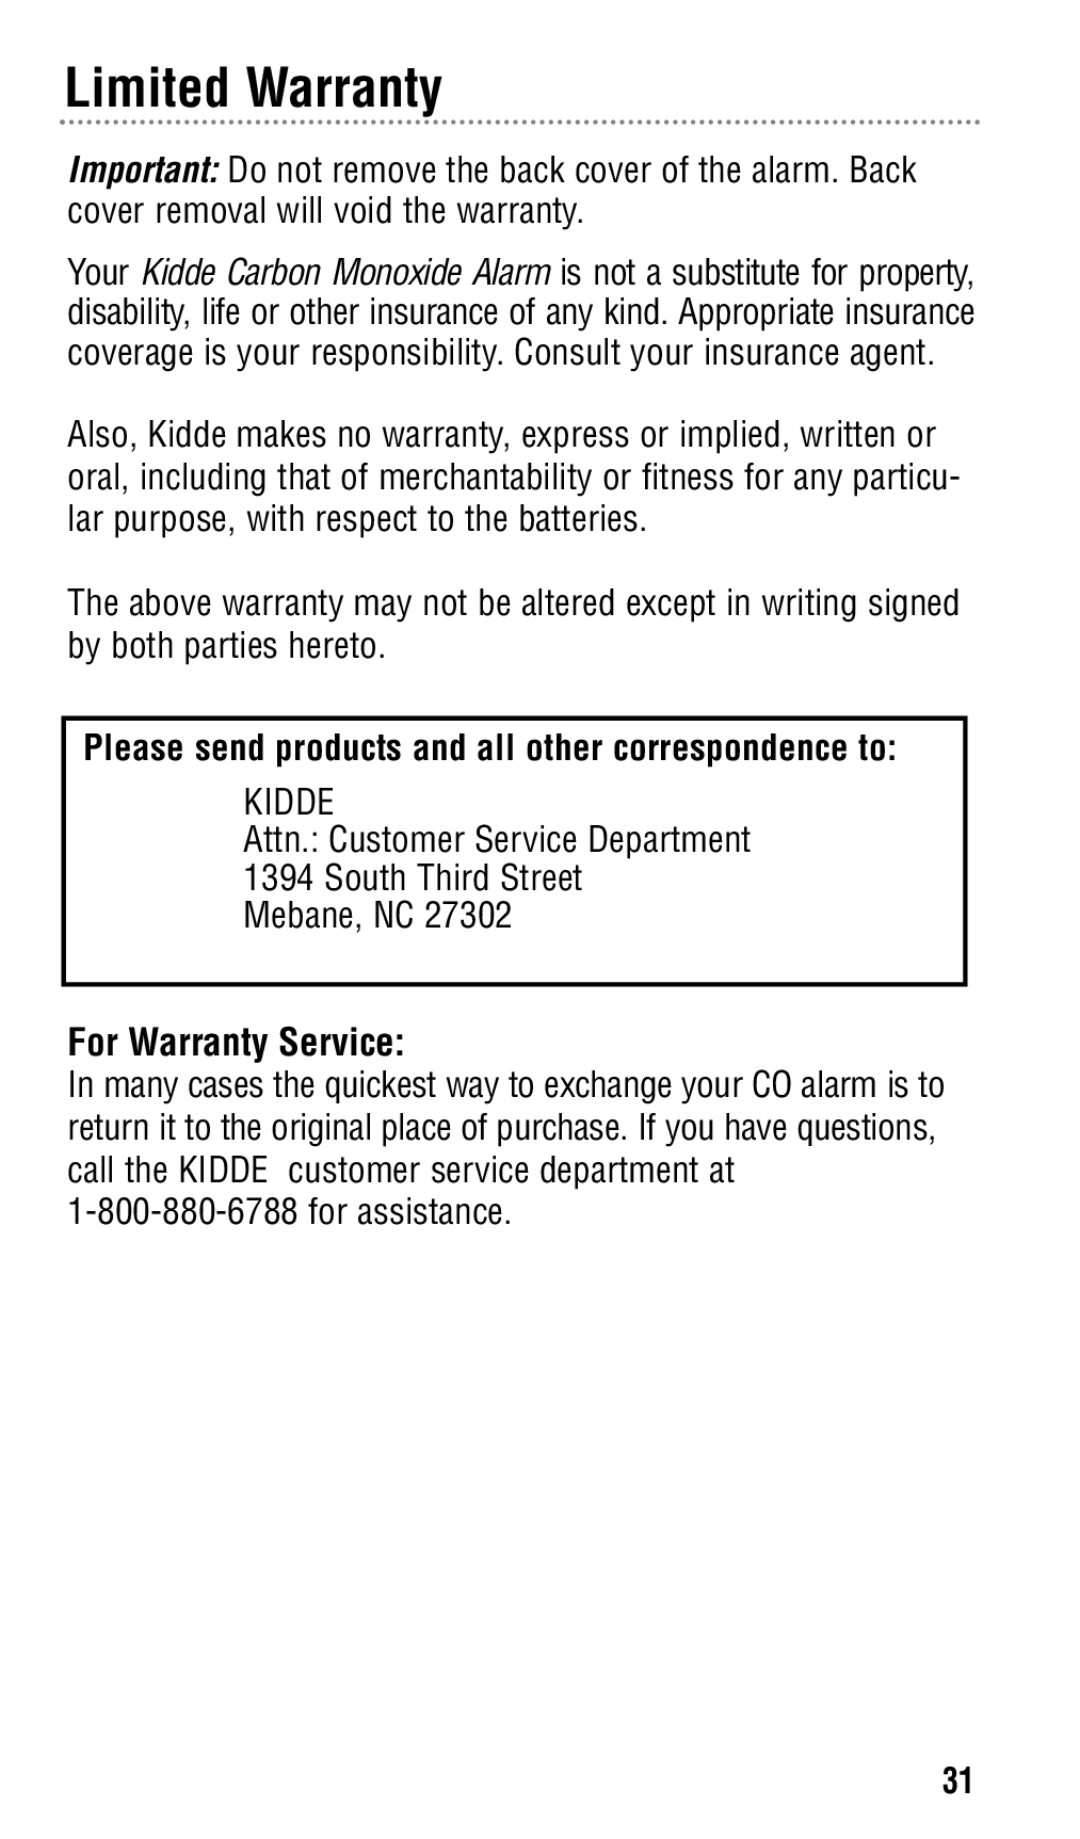 Kidde KN-COPP-3 manual For Warranty Service 